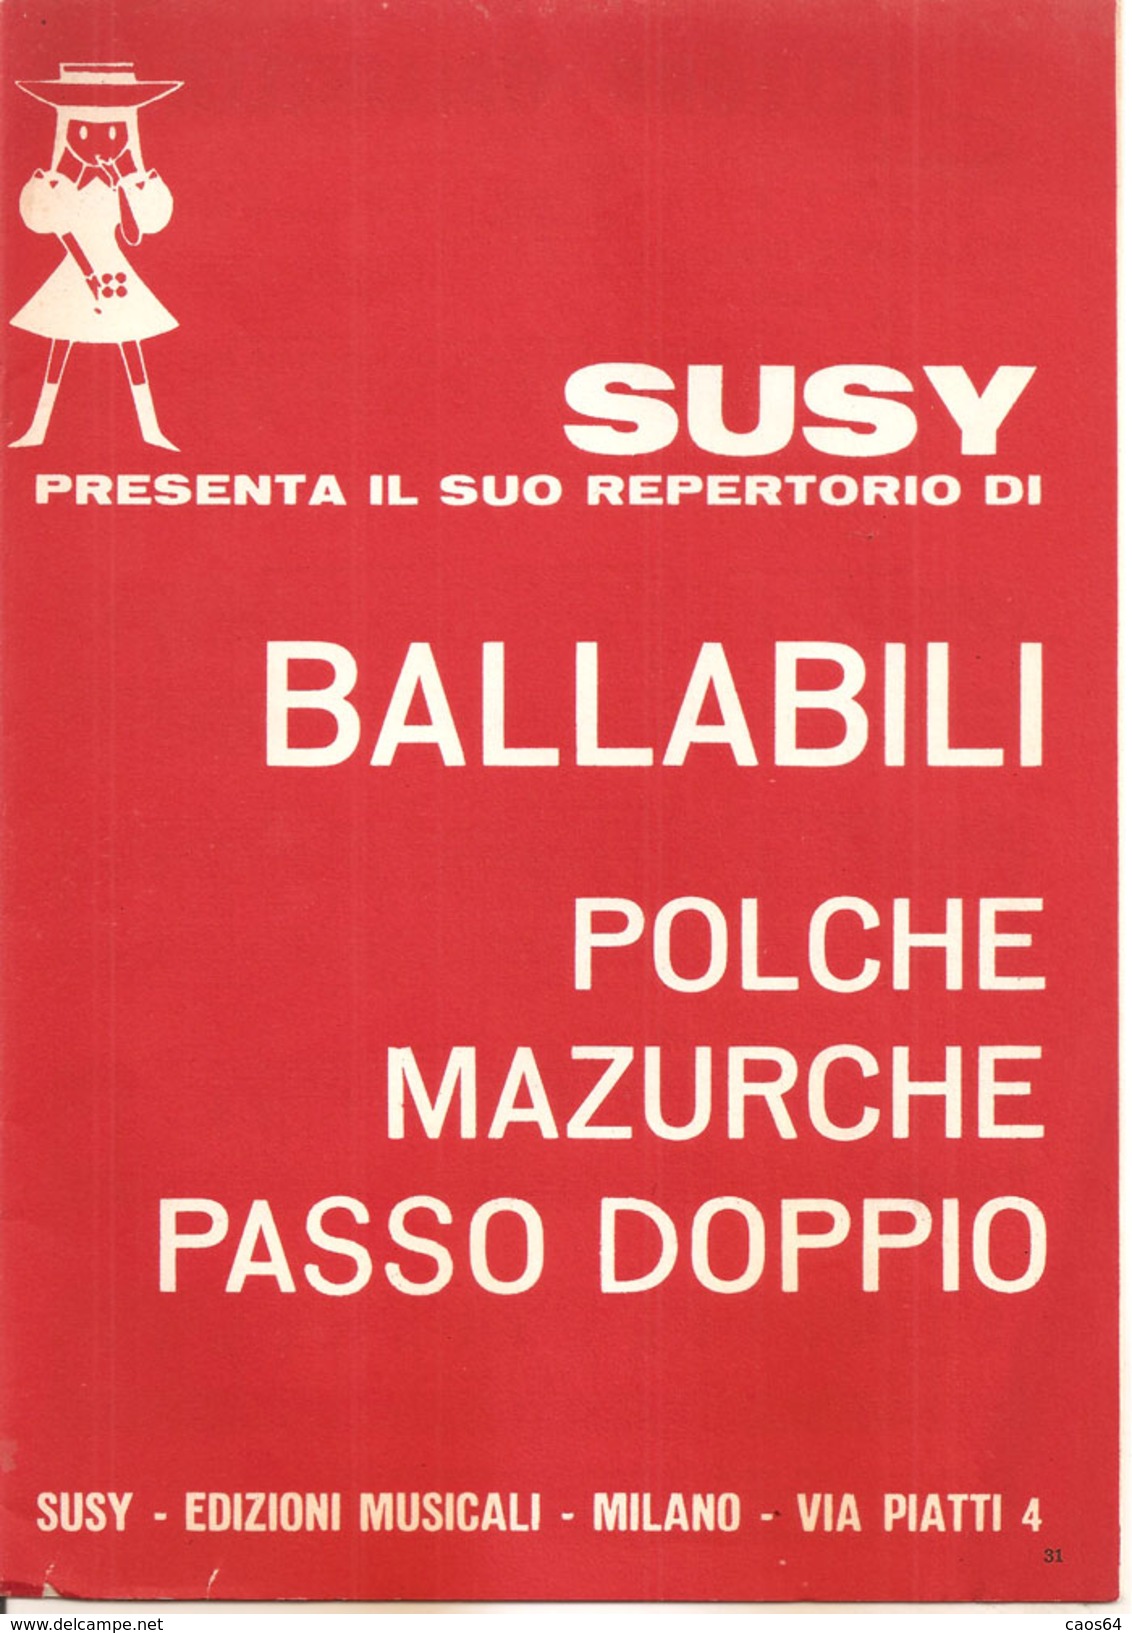 SUSY PRESENTA IL SUO REPERTORIO DI BALLABILI (II) - Folk Music